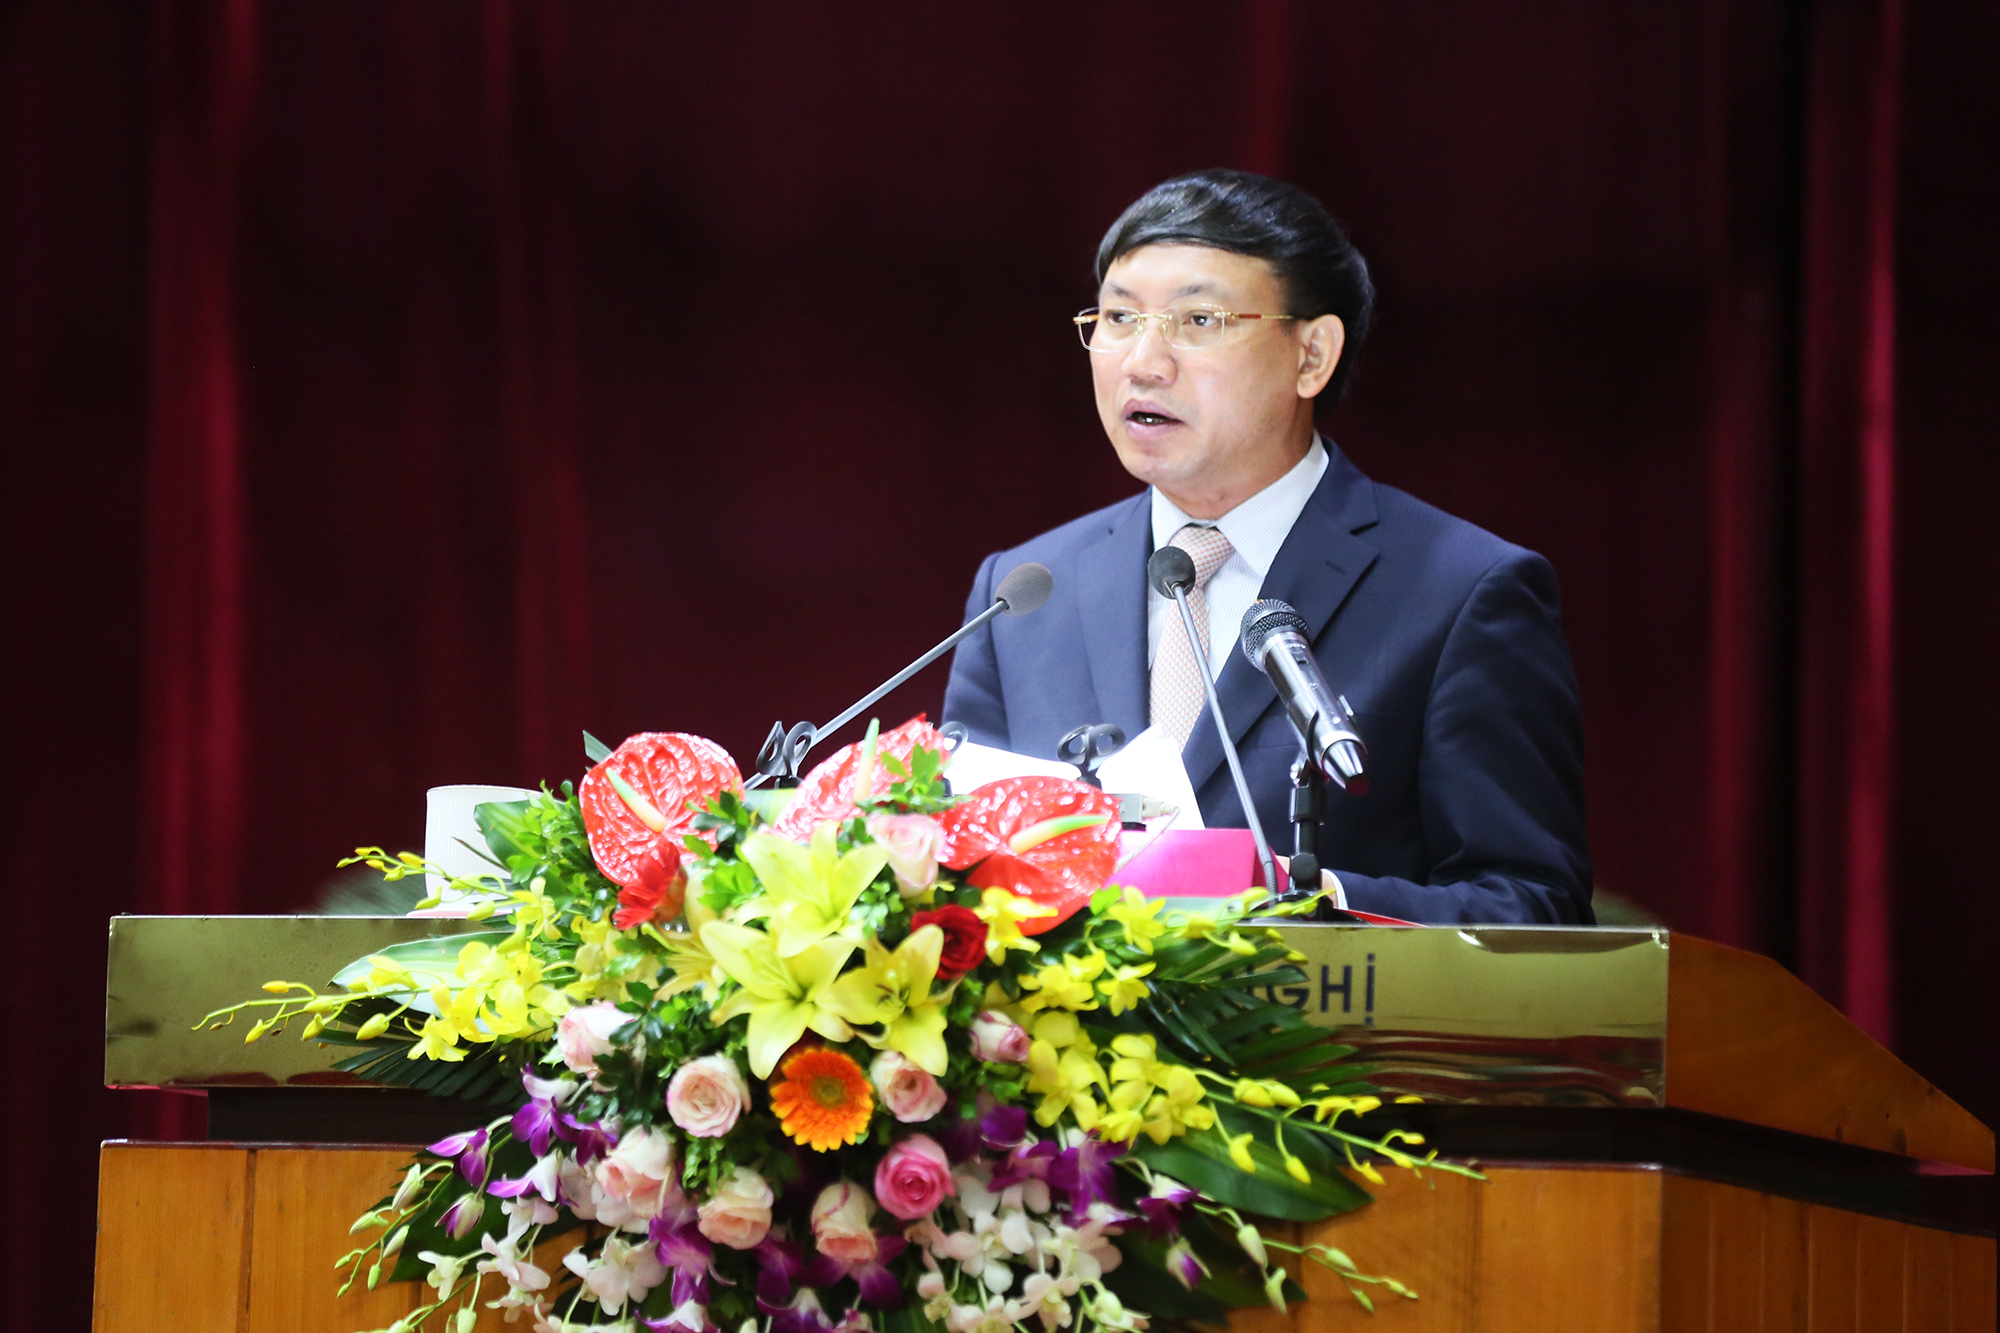 Đồng chí Nguyễn Xuân Ký, Phó Bí thư Thường trực Tỉnh ủy, Chủ tịch HĐND tỉnh, phát biểu bế mạc.